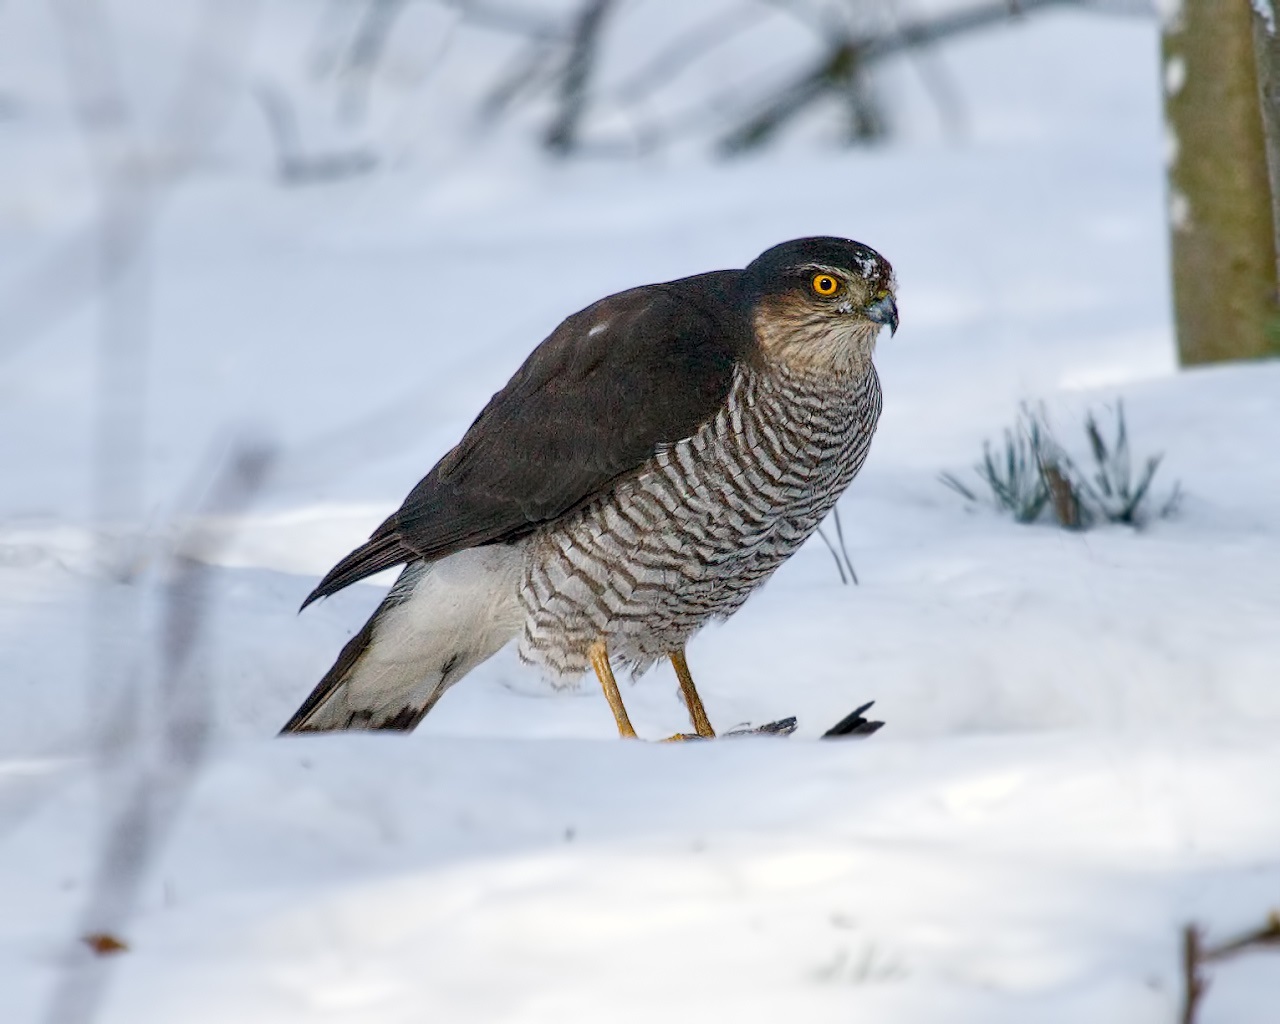 Sparrow Hawk on Snow with Prey